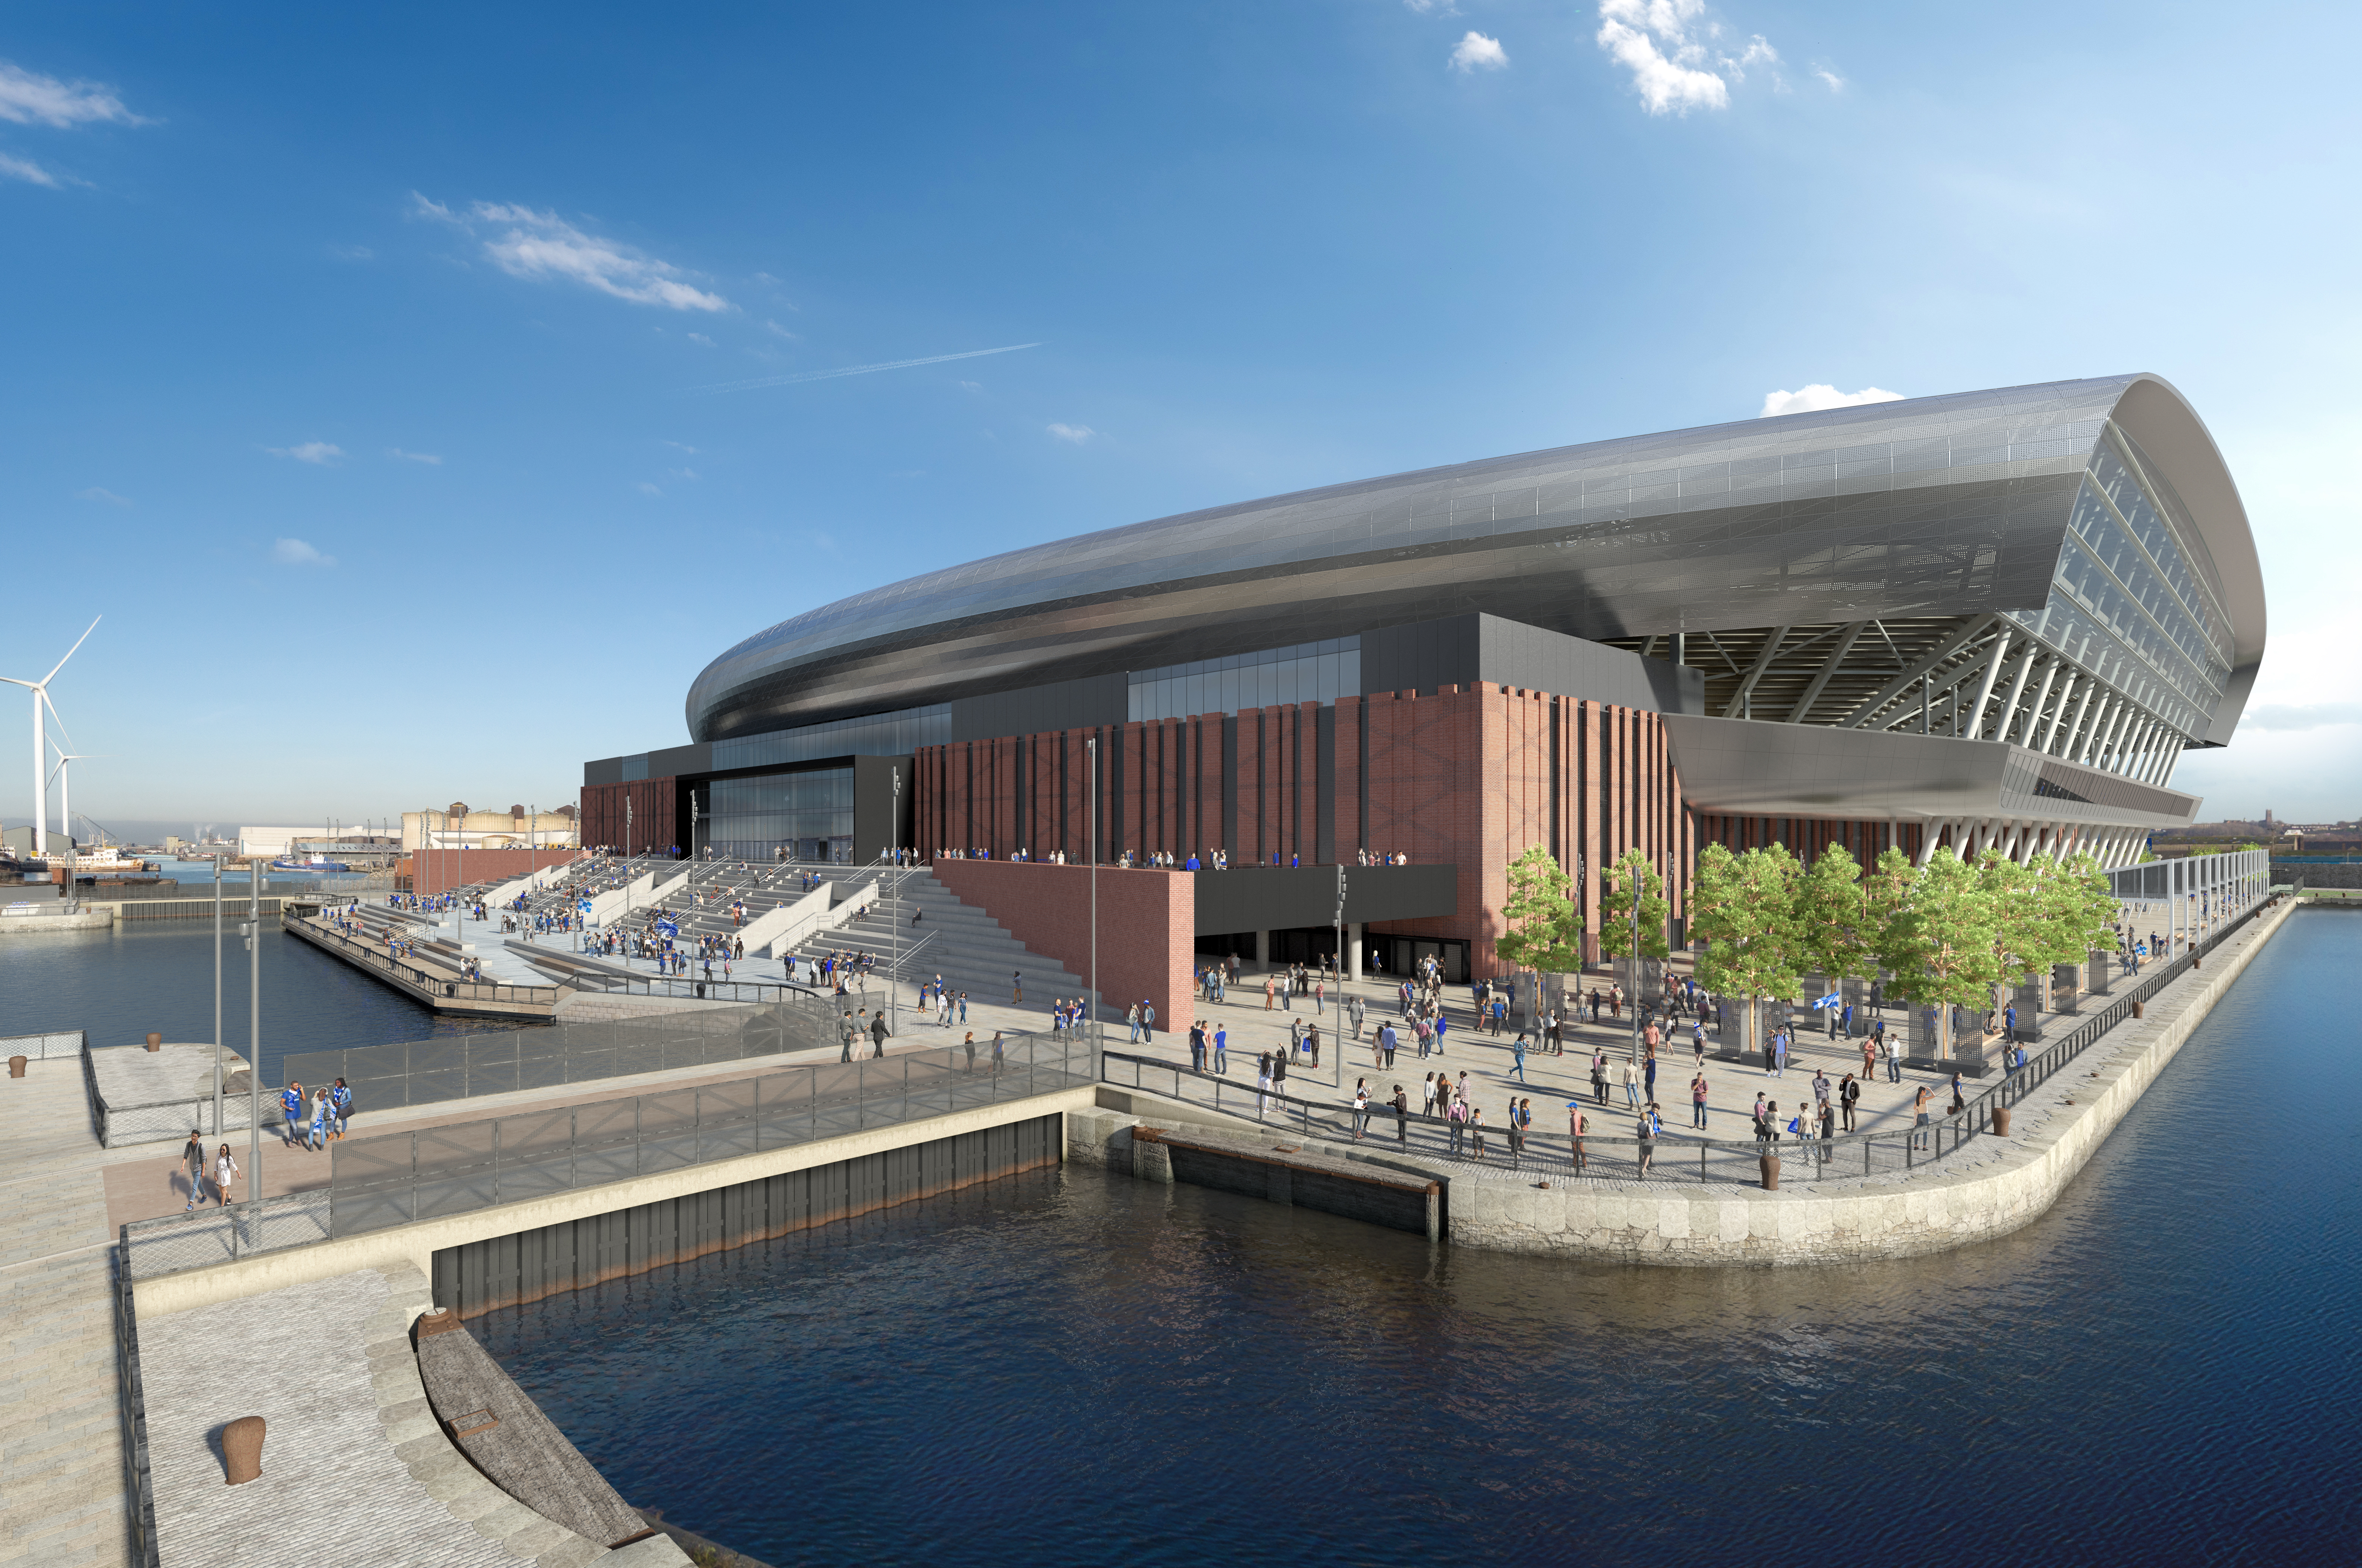 Everton Gibt Baustart Fur Neues Stadion Bekannt Stadionwelt